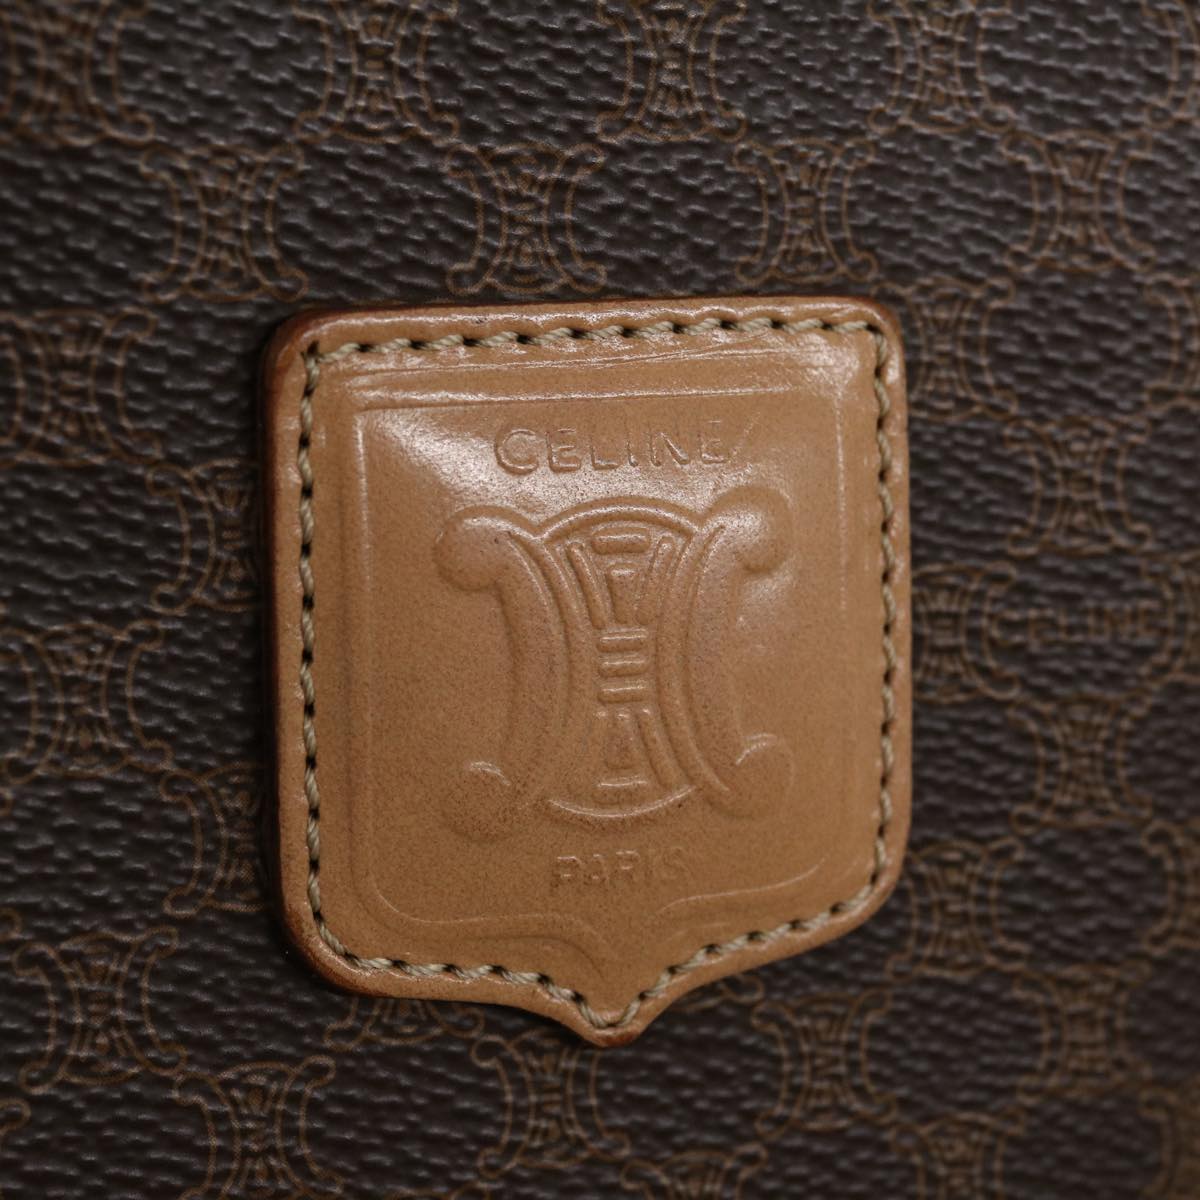 Celine Paris monogram handbag (Vintage)